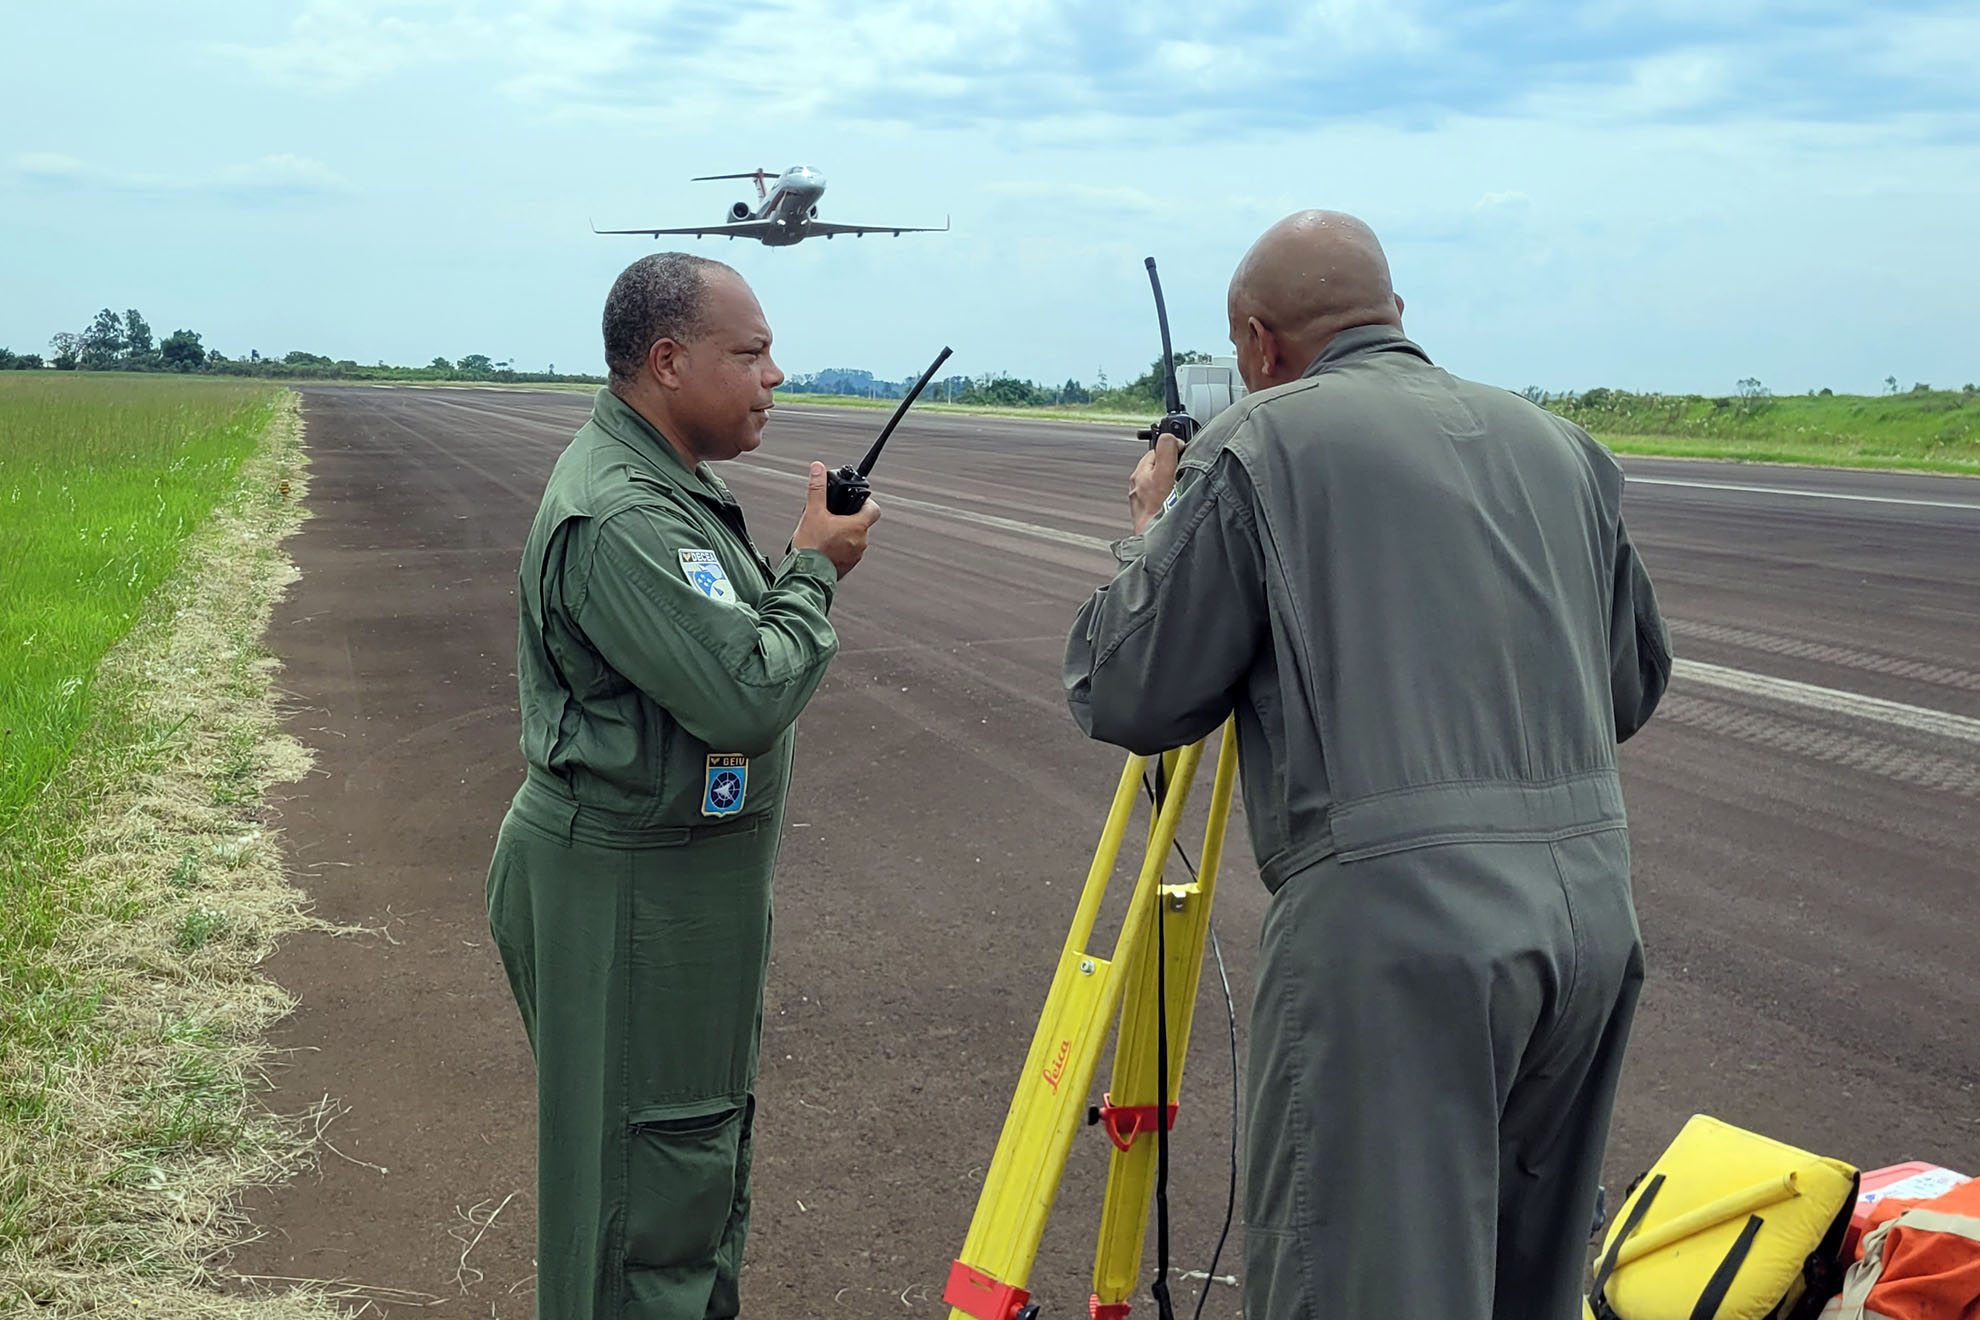 GEIV realiza inspeção aos auxílios à navegação aérea do Paraguai